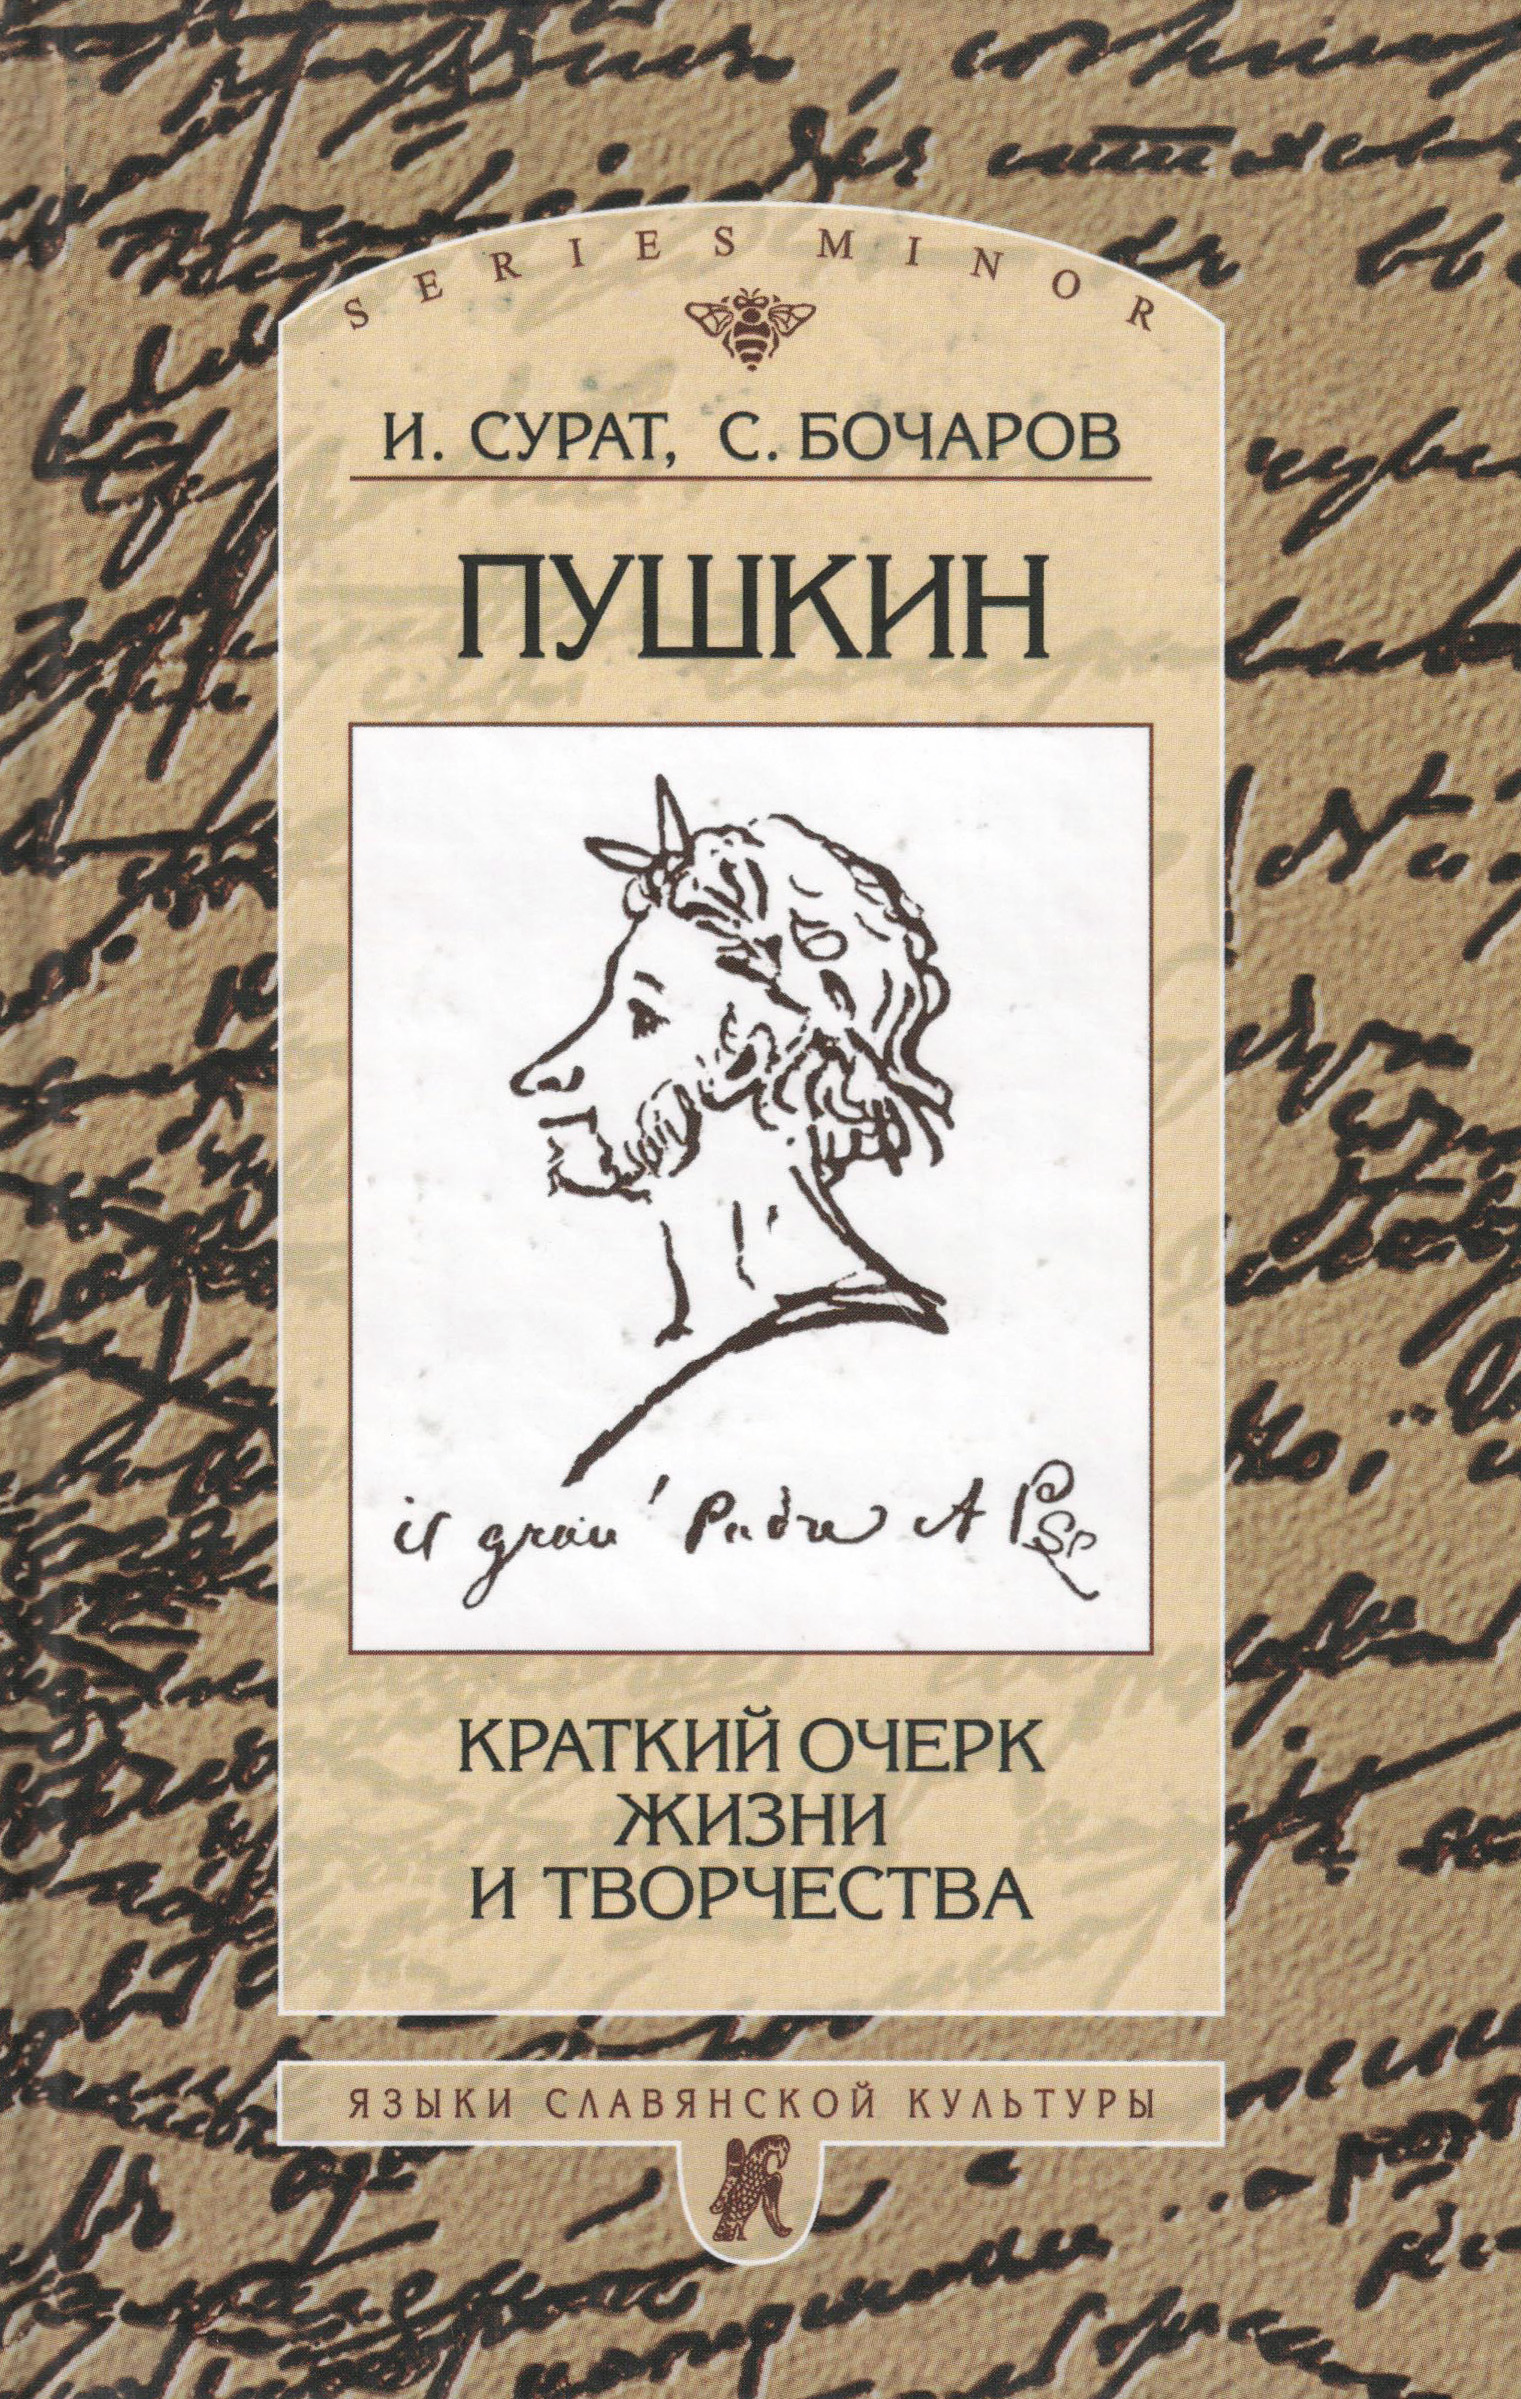 Пушкин. Краткий очерк жизни и творчества